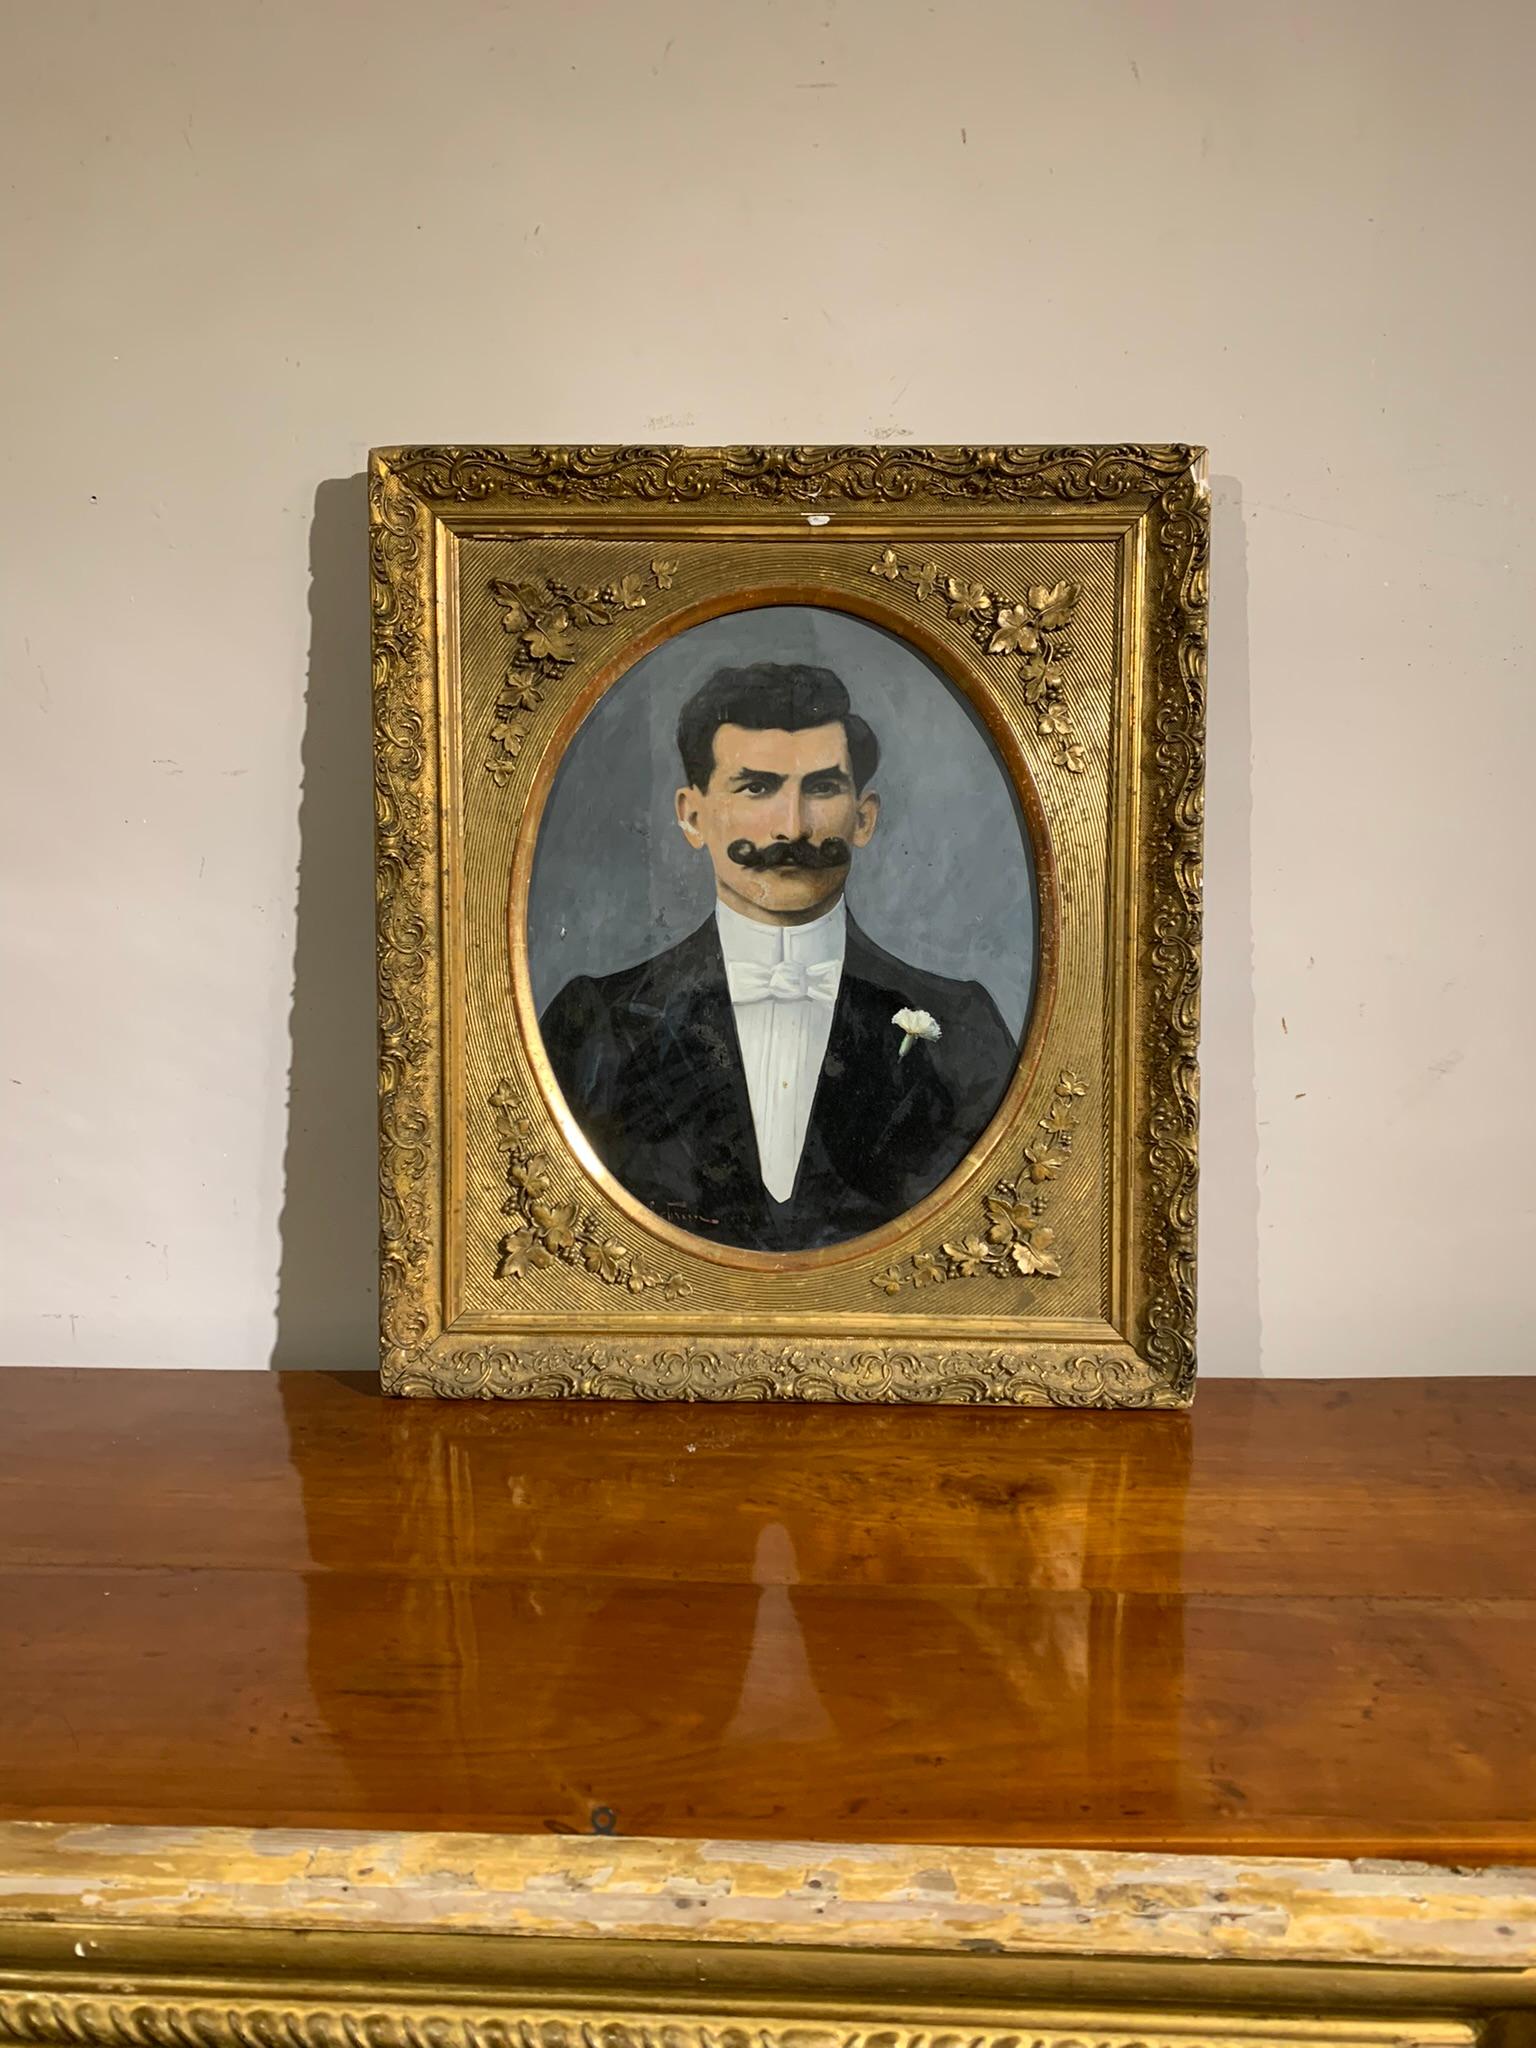 Portrait d'un homme à la moustache torsadée, dans le costume sombre typique de l'époque Art nouveau de la fin du XIXe siècle. Cadre de tablette doré, avec décorations florales.
Technique de détrempe sur carton, signature non identifiable mais